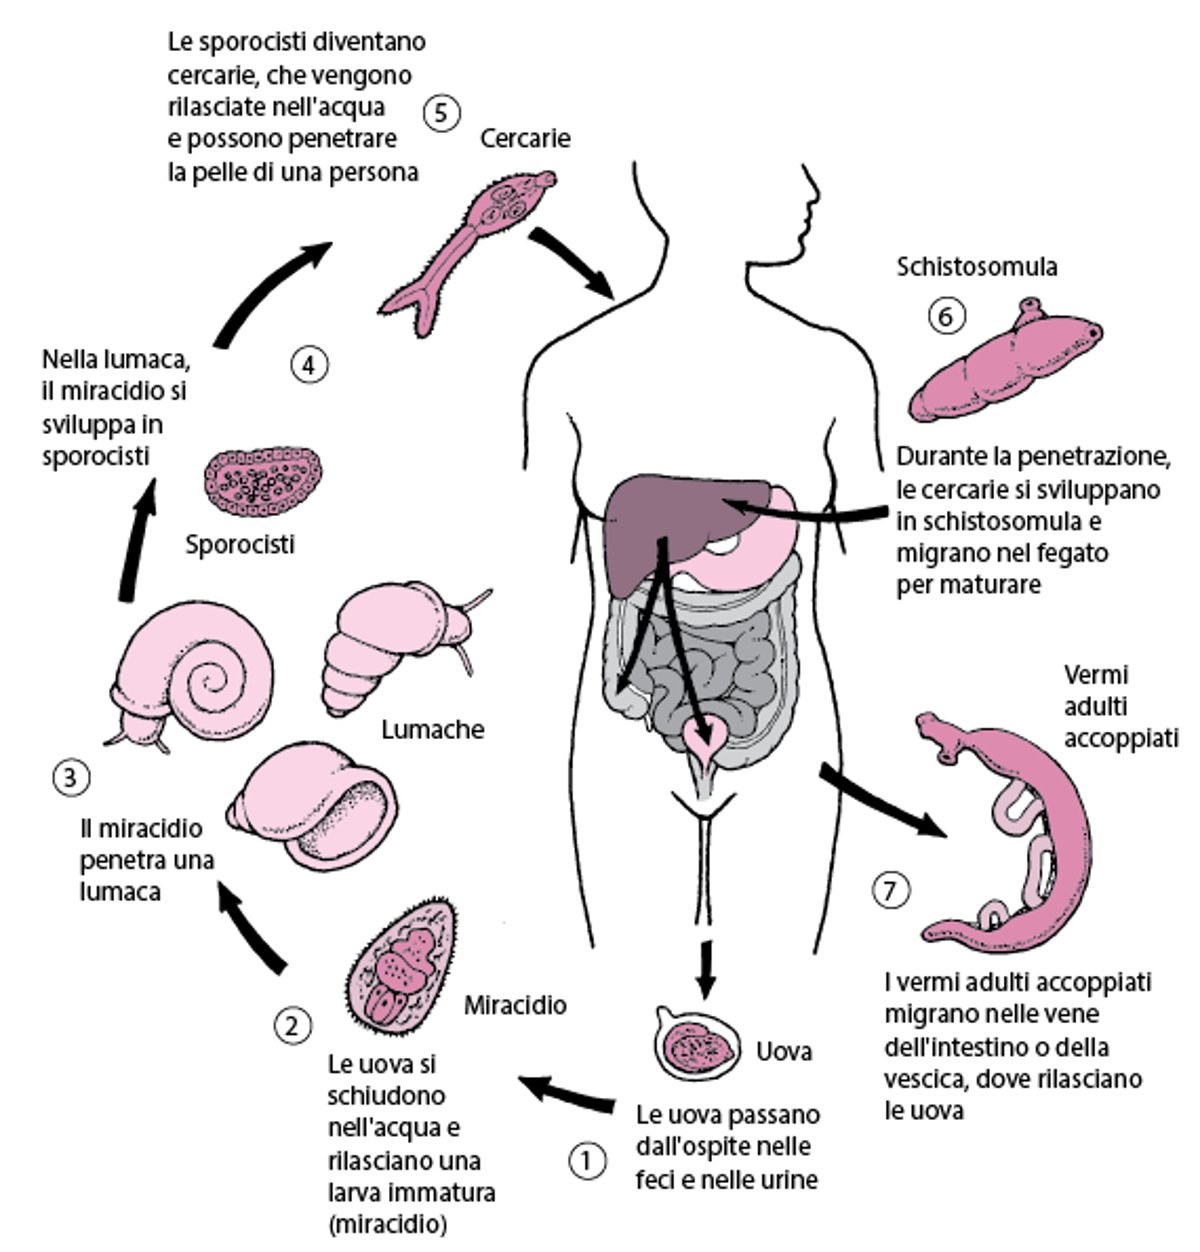 Ciclo vitale dei trematodi del genere Schistosoma